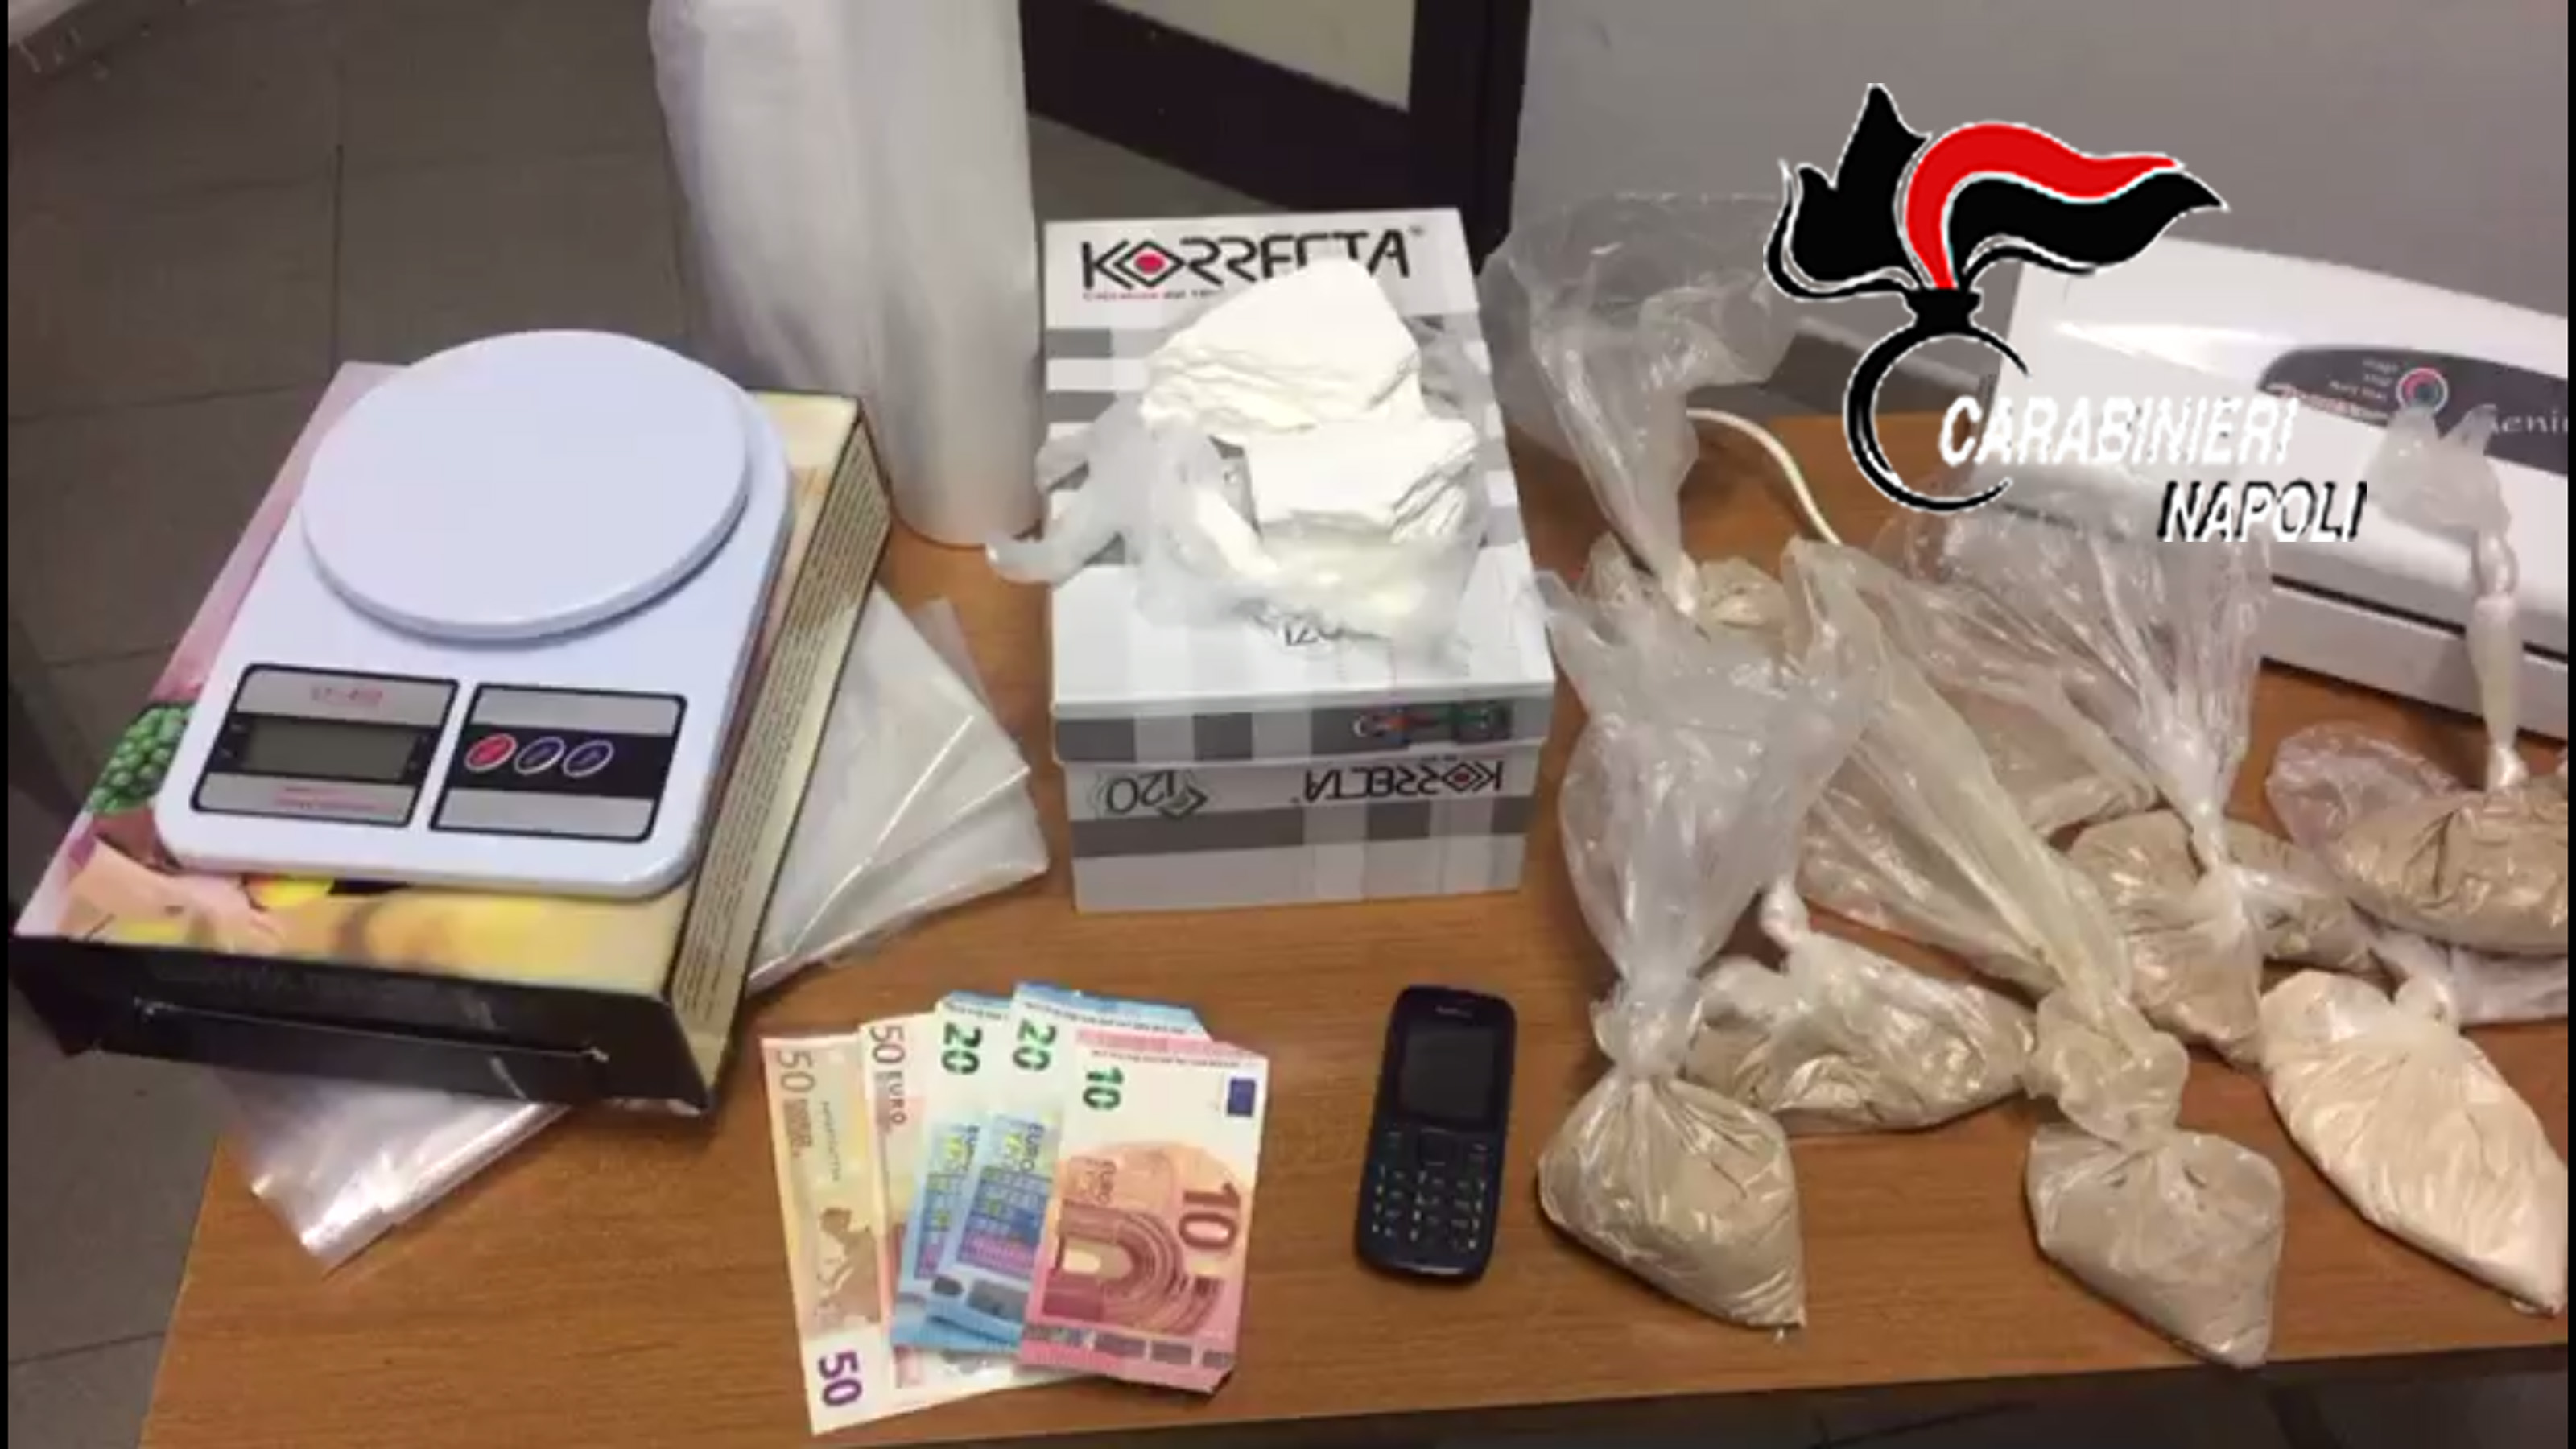  Casandrino, nascondeva dosi di cocaina ed eroina dietro al forno: arrestata 28enne